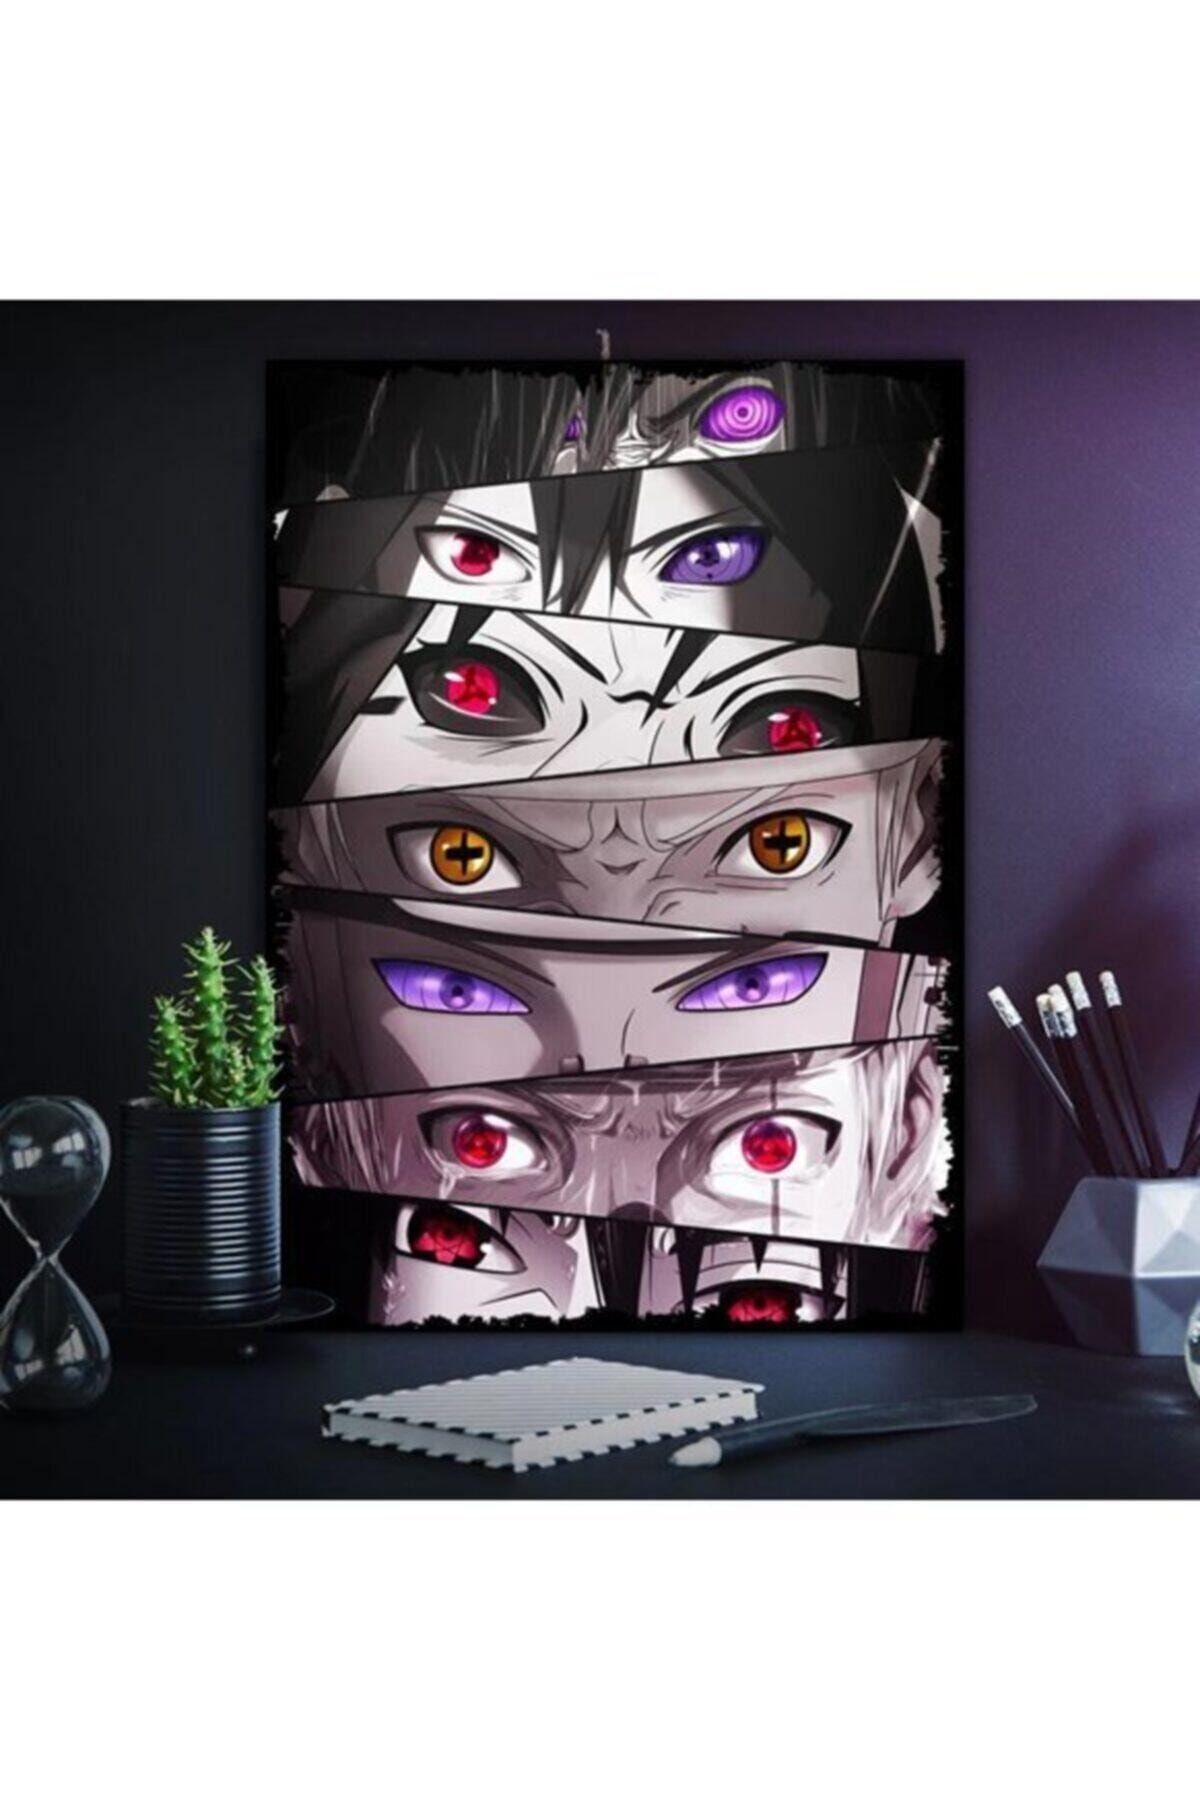 Tontilika Naruto Gözleri Anime Dizi Tasarım 15x21cm Hediyelik Dekoratif 8mm Ahşap Tablo